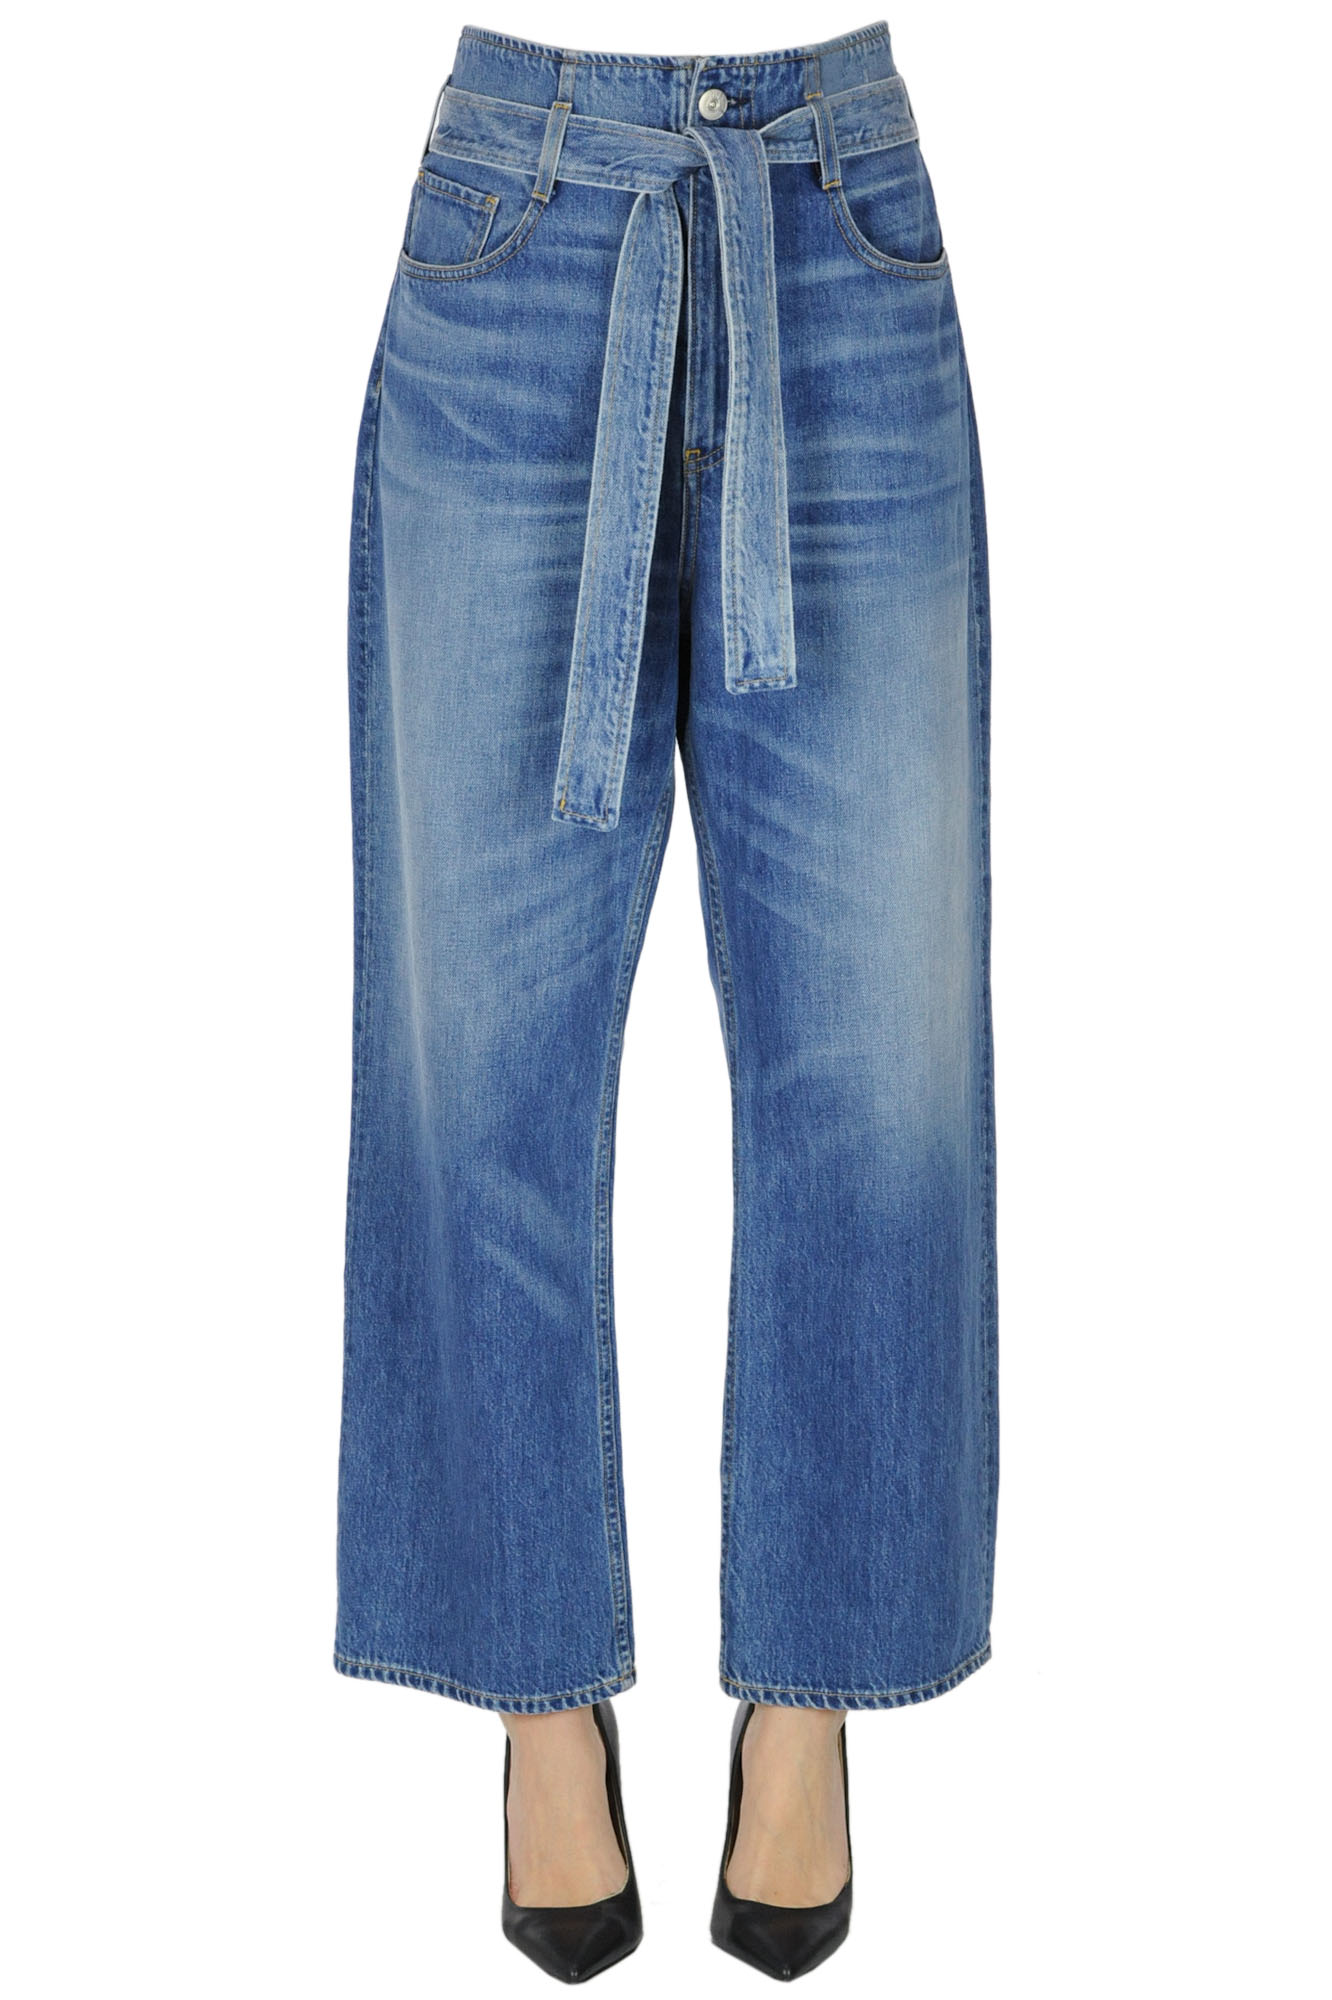 3x1 Paper bag jeans - Buy online on Glamest Fashion Outlet - Glamest ...